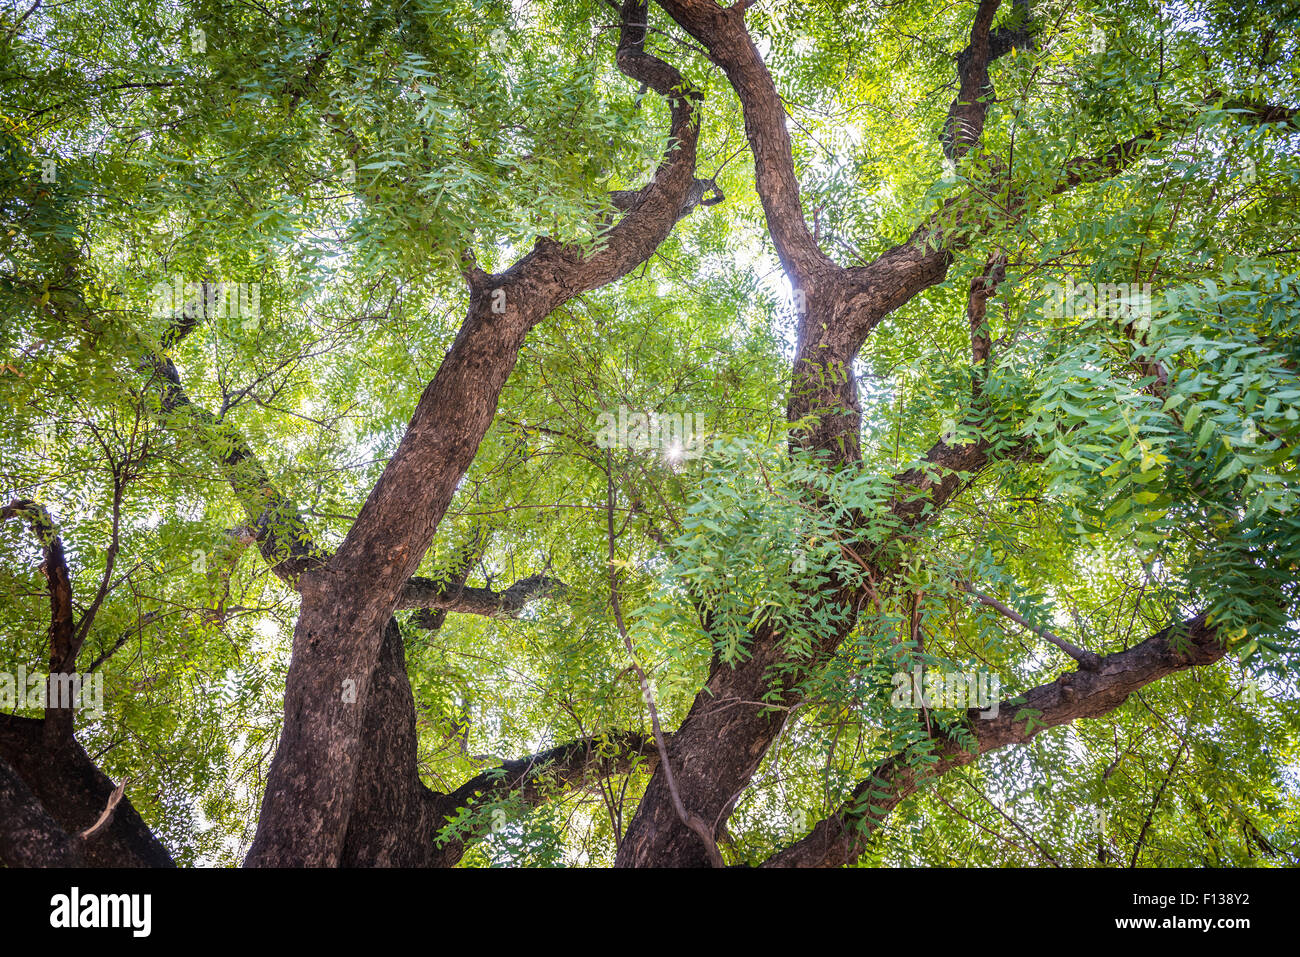 Neem trees in a small village near Chitrakoot, (Chitrakut), Madhya Pradesh, India Stock Photo